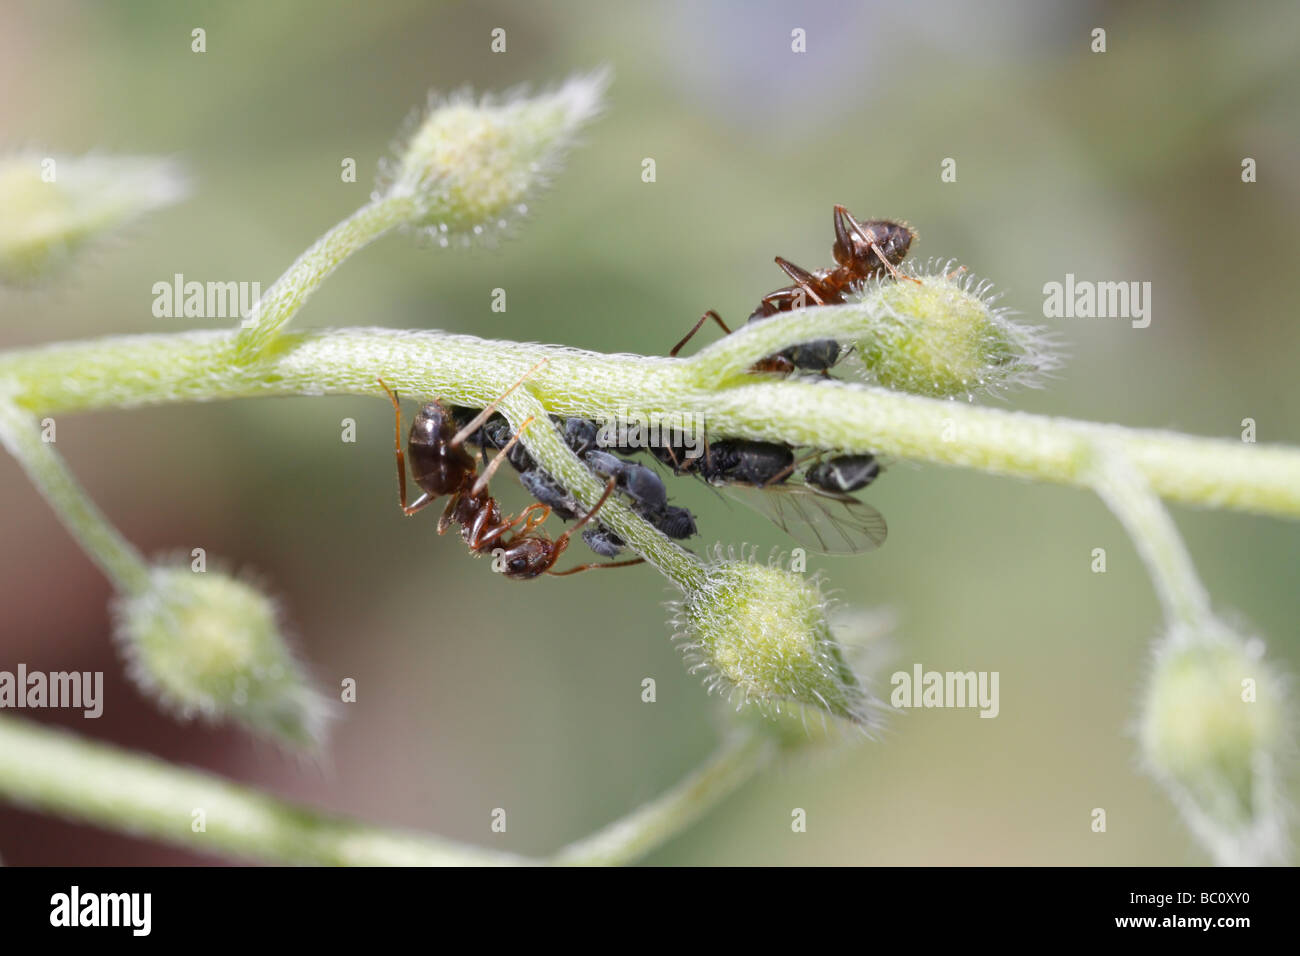 Lasius niger, la hormiga negra de jardín, y los áfidos (aphis fa). La hormiga es ordeñar los áfidos. La flor es un no me olvido Foto de stock